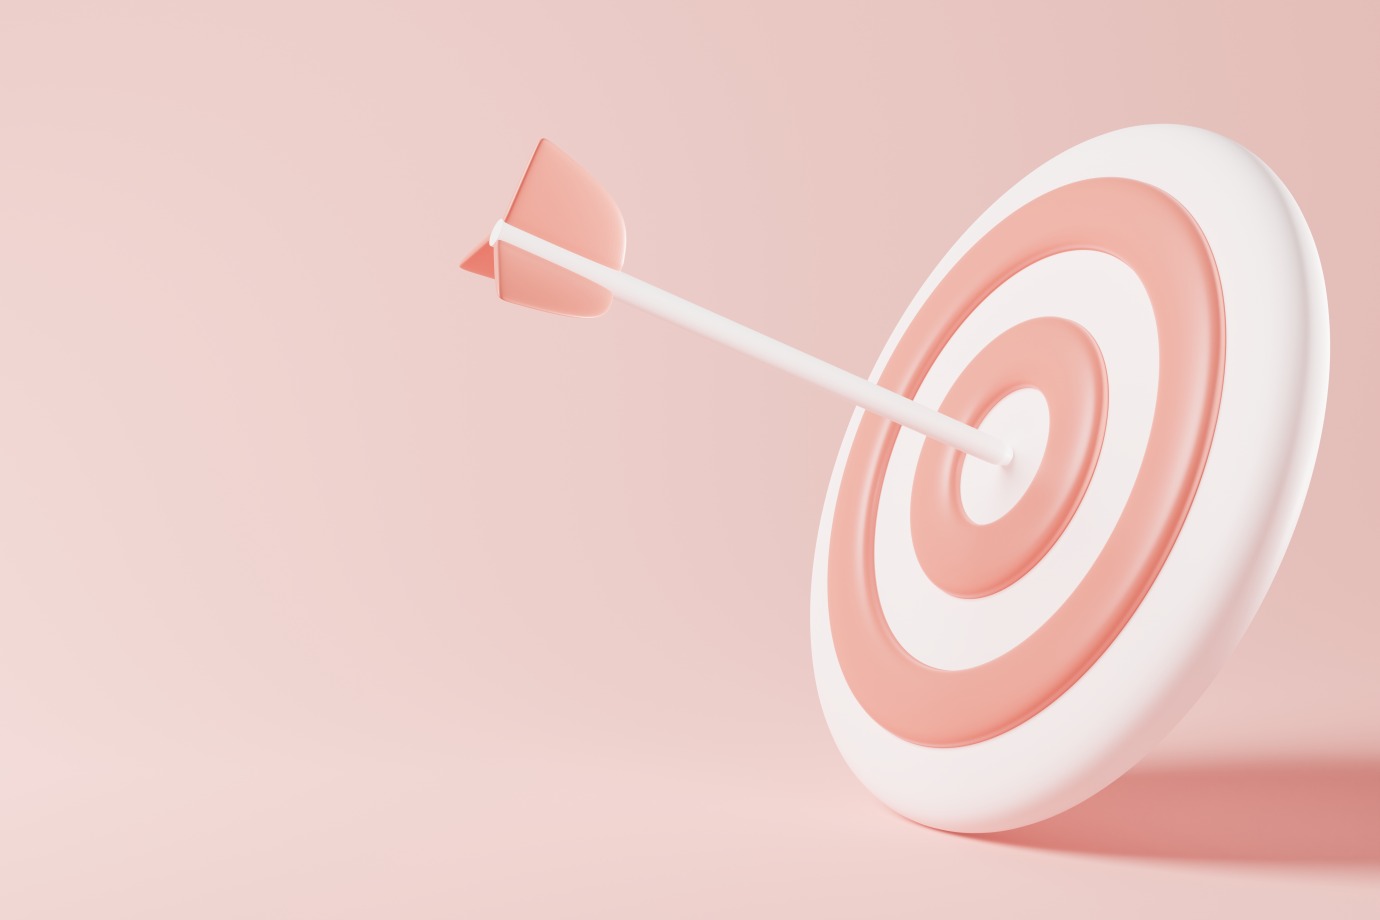 Set Realistic Goals Target Arrow Pink 3D